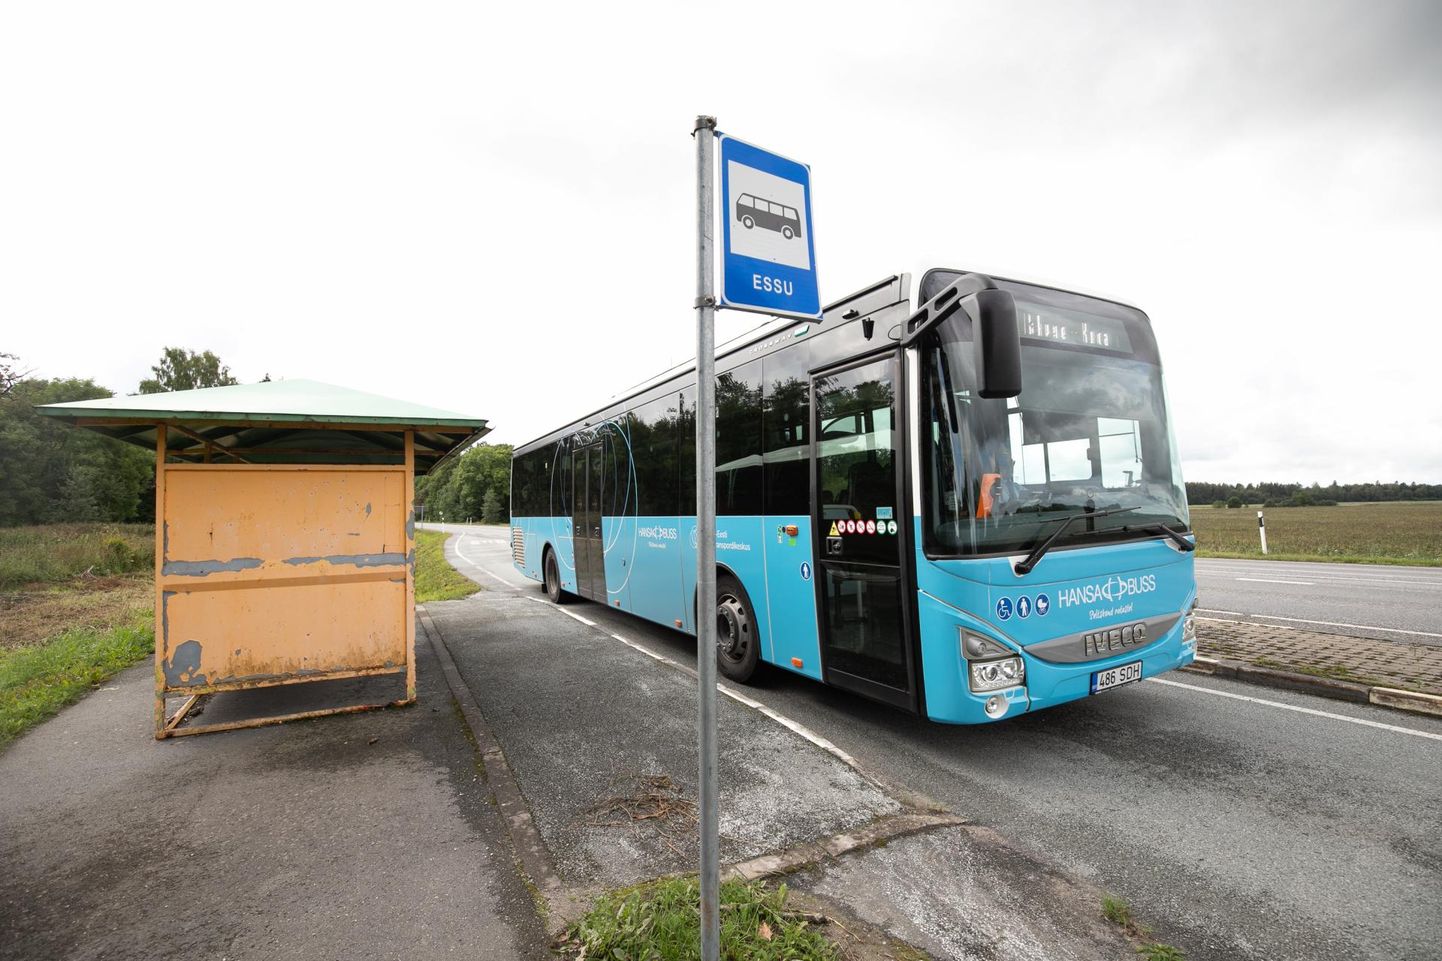 Regionaal- ja põllumajandusministeerium tegi ettepaneku kehtestada järgmisest aastast maakondlikel bussiliinidel pileti hinnaks 1,50 eurot ja kuupileti hinnaks 20 eurot.